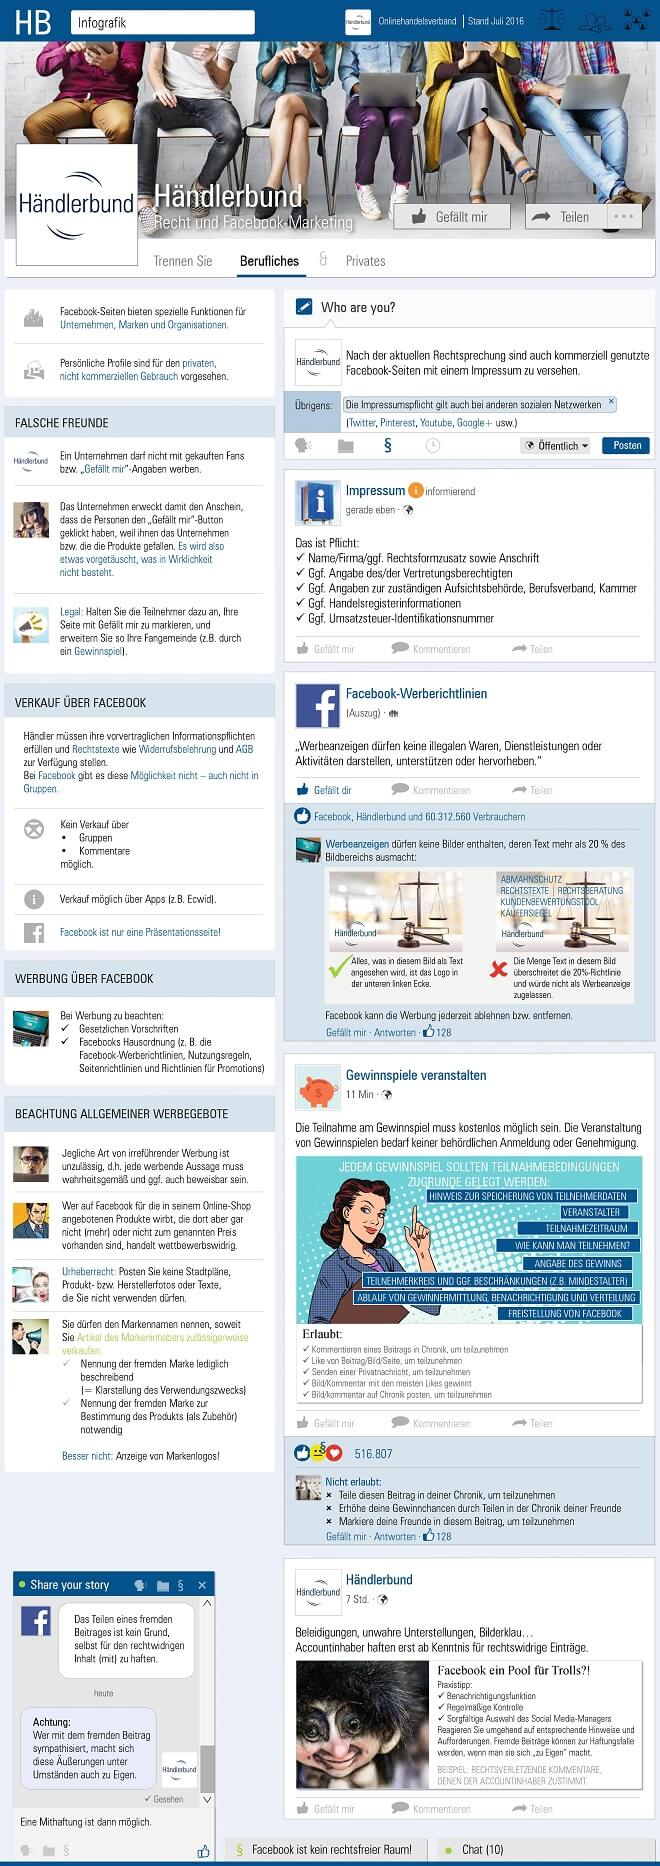 Händerbund Infografik Social Media Marketing Recht